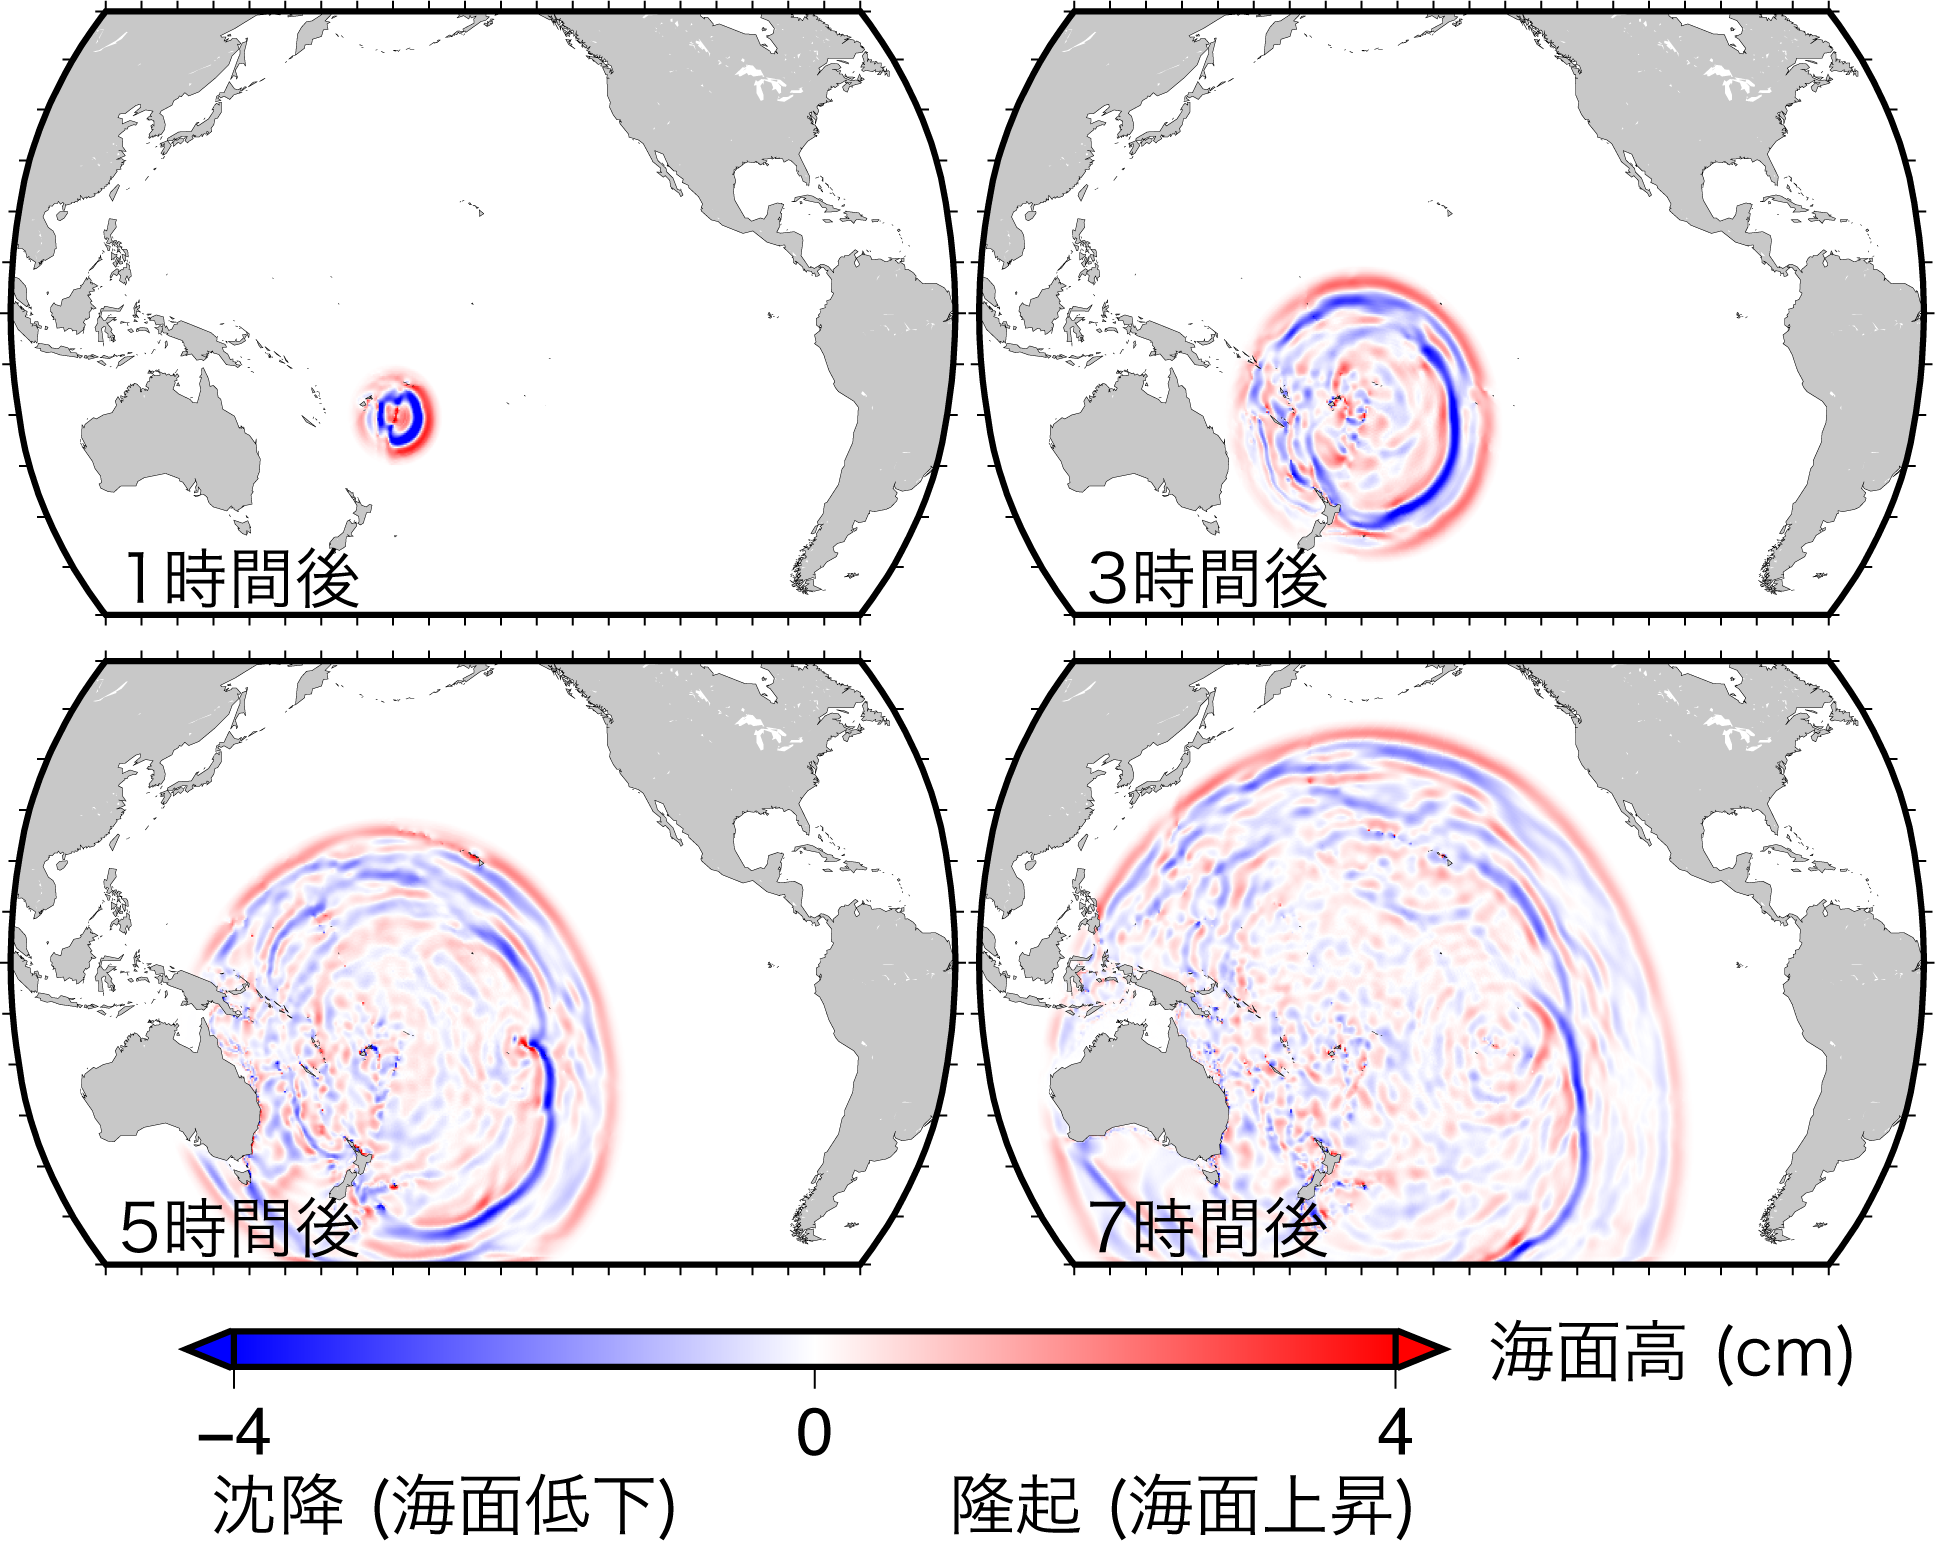 本研究の数値シミュレーションにより明らかとなった，トンガ火山噴火に伴う津波の発生と伝播の様子．噴火後，火山を中心に大気ラム波が300 m/s の速度で同心円状に広がるのに合わせて，海面の隆起の波 (赤色) が周囲へと伝播する．その後，少し遅れて，津波の速度 (約200〜220 m/s) で沈降の波 (青色) が周囲に伝播する．これらに加えて，海底地形の凹凸に起因して微小な波が生じている．